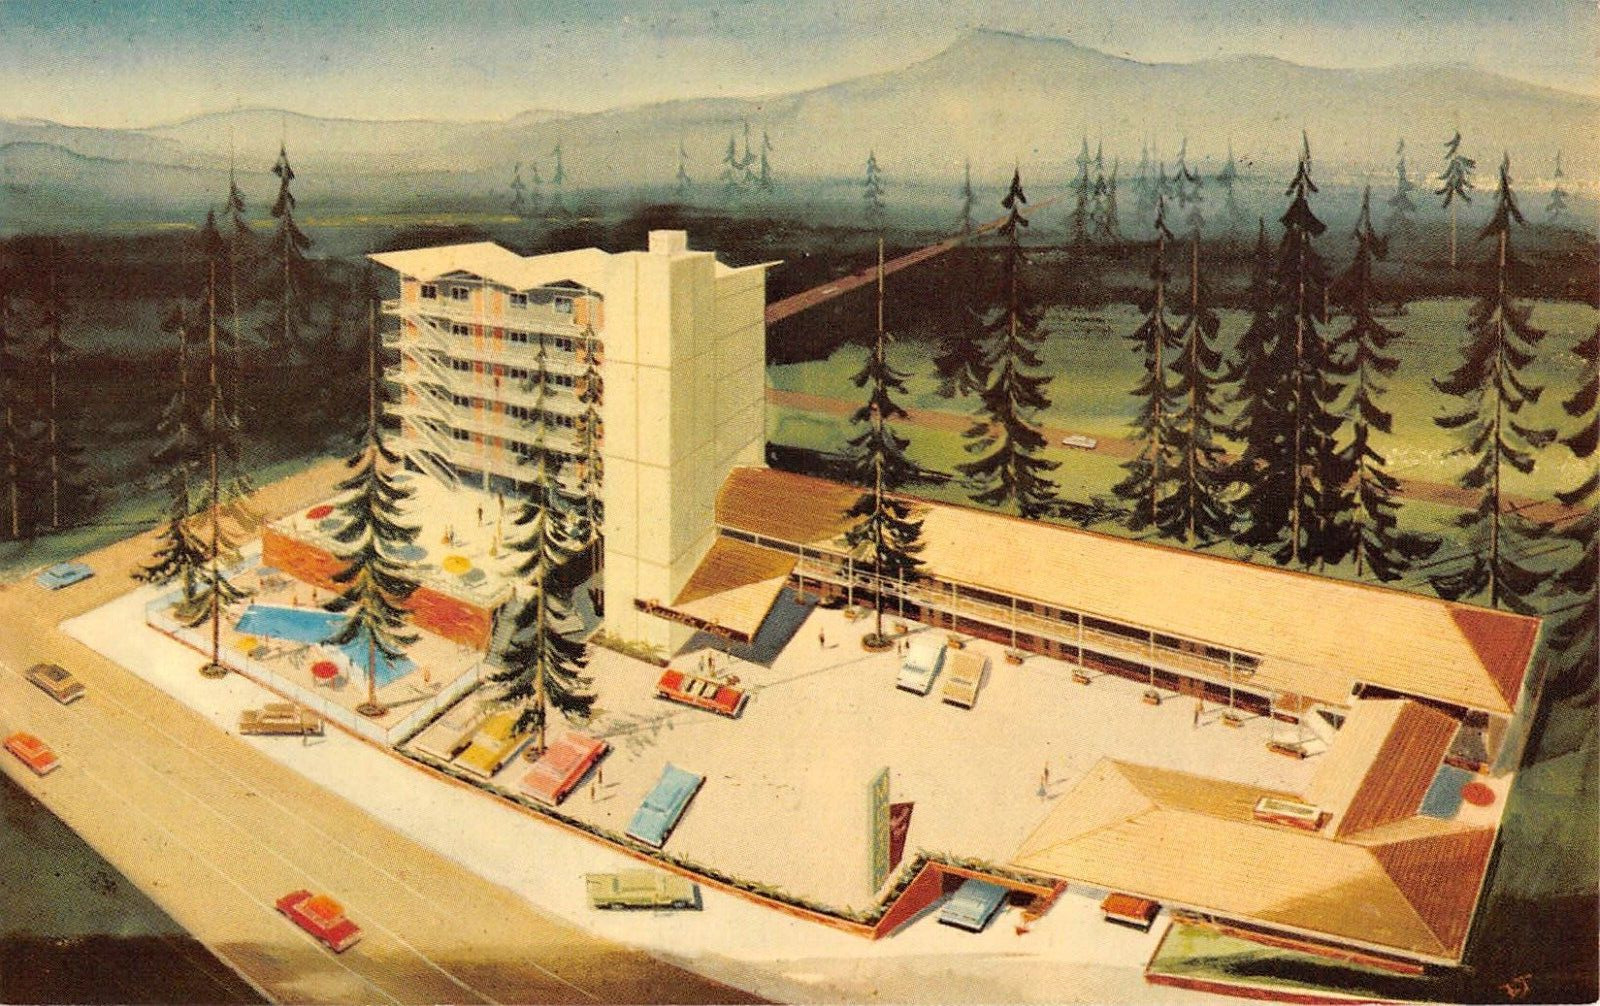 RUSSELL \'N PINES TOWER LODGE Tahoe City, Lake Tahoe, CA c1960s Vintage Postcard